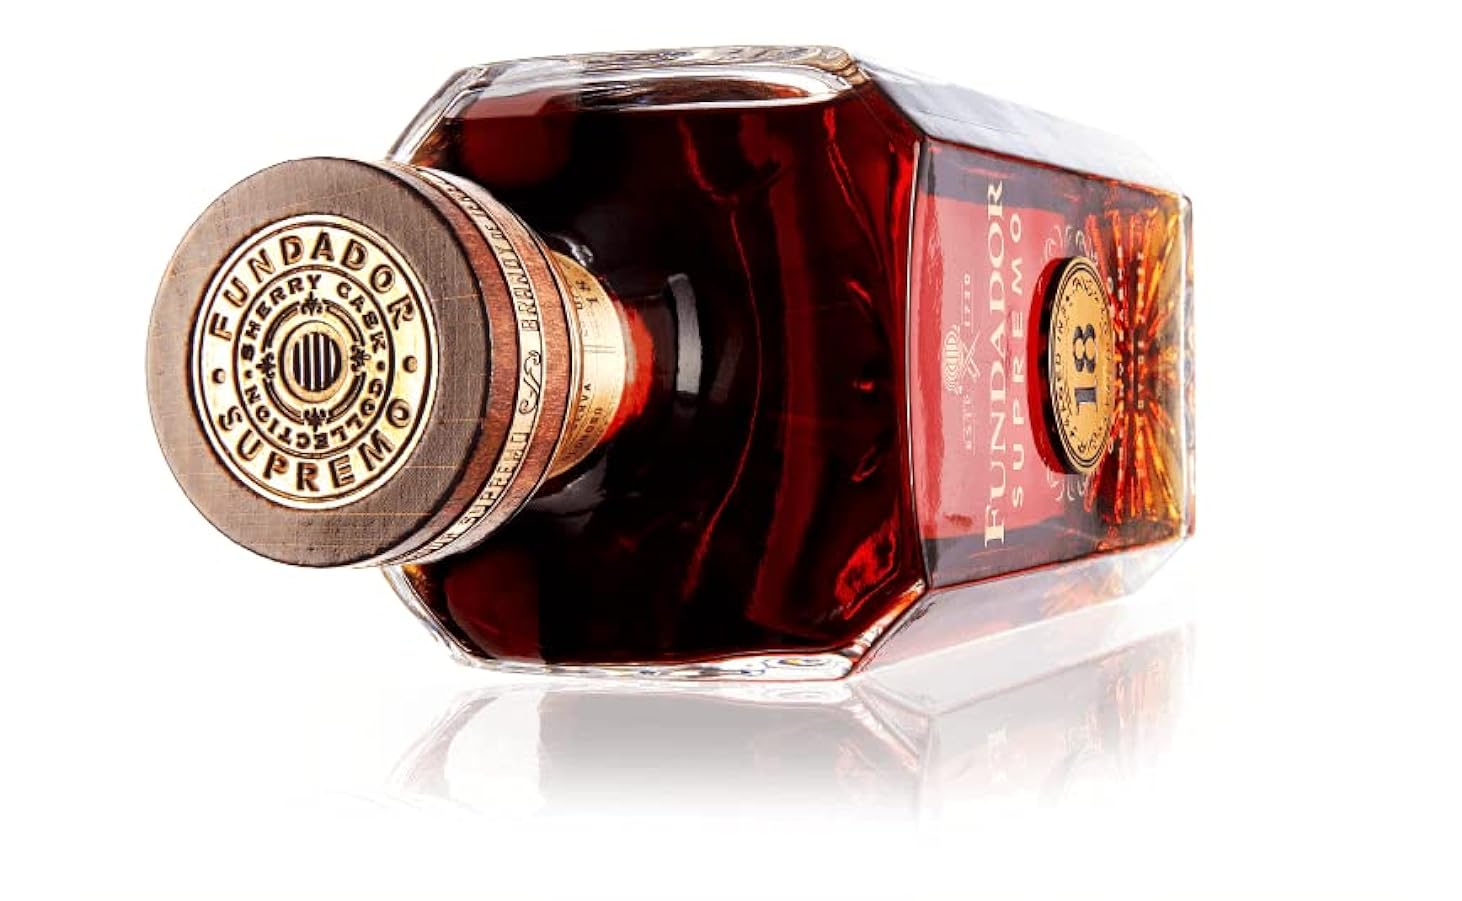 Fundador Supremo 18 Years Old Sherry Casks Brandy de Jerez 40% Vol. 1l in Giftbox 935897907